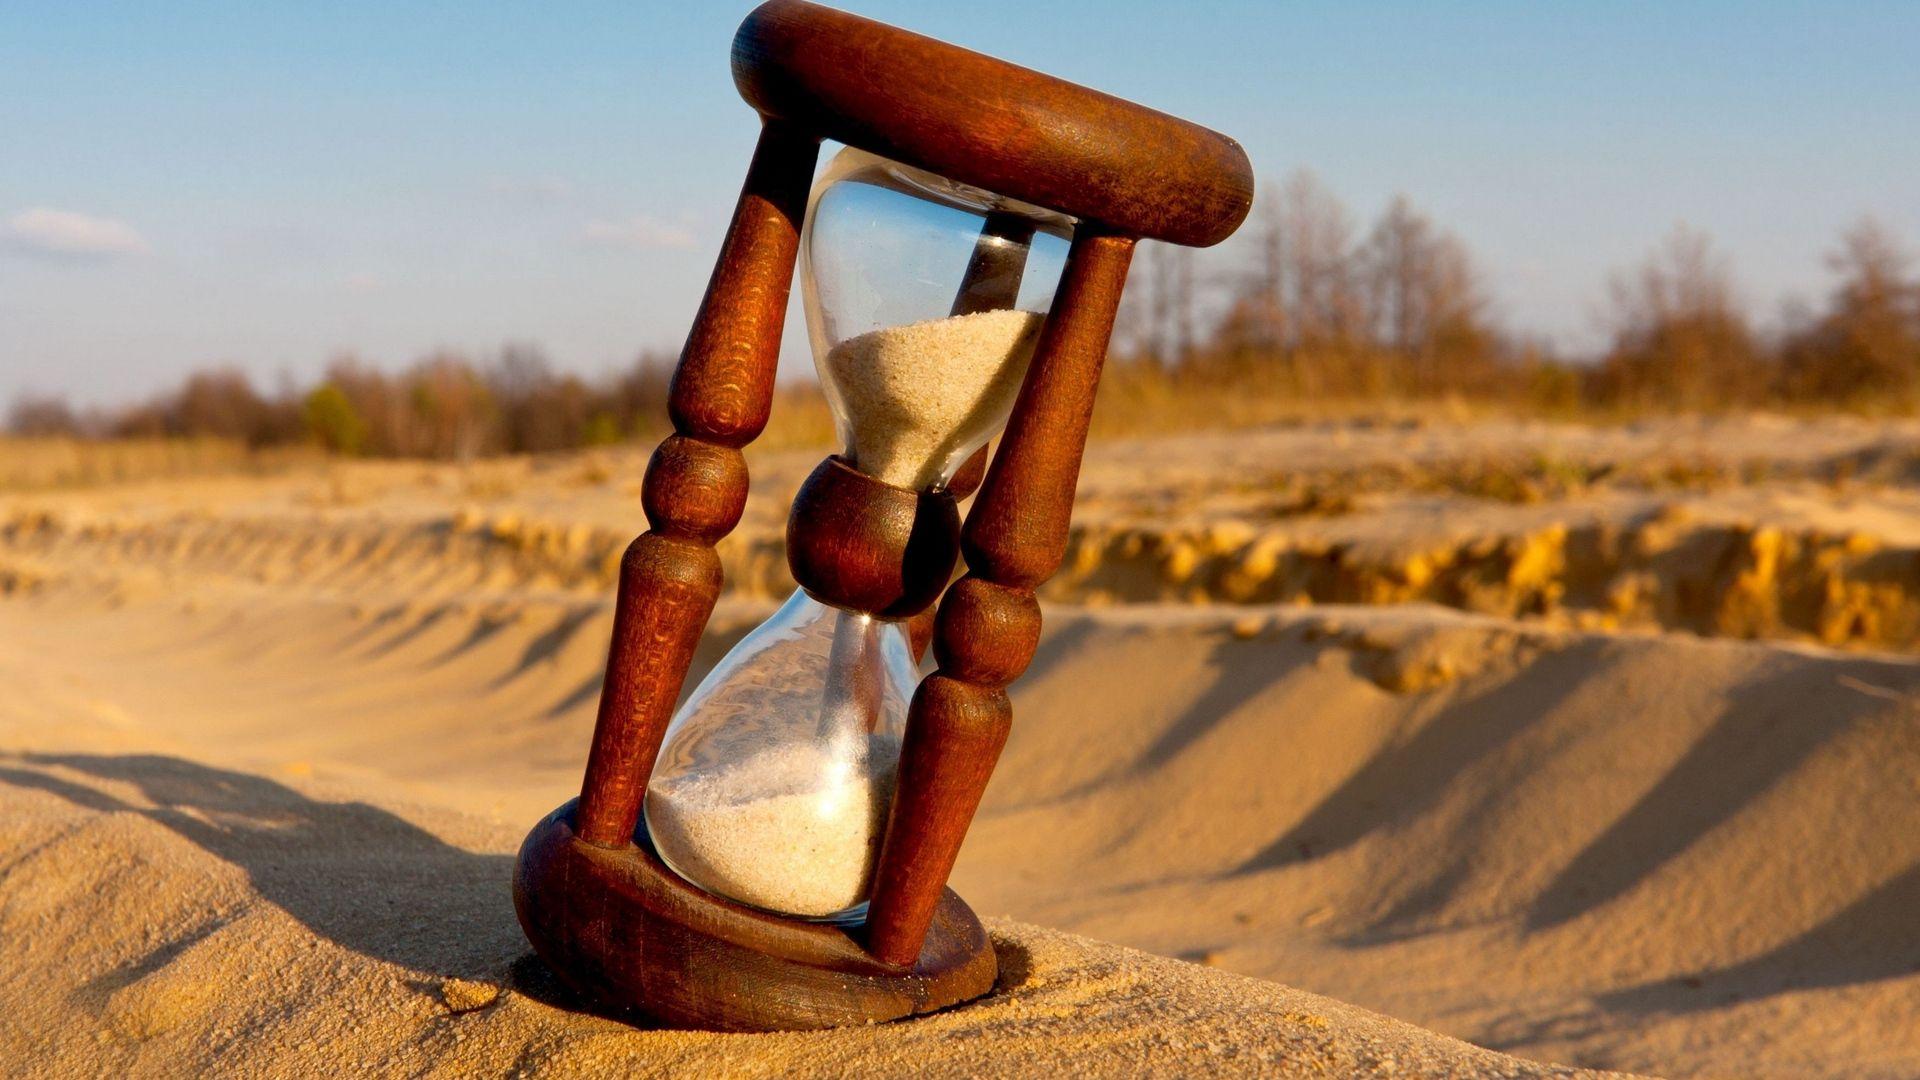 Hình nền đồng hồ trên cát